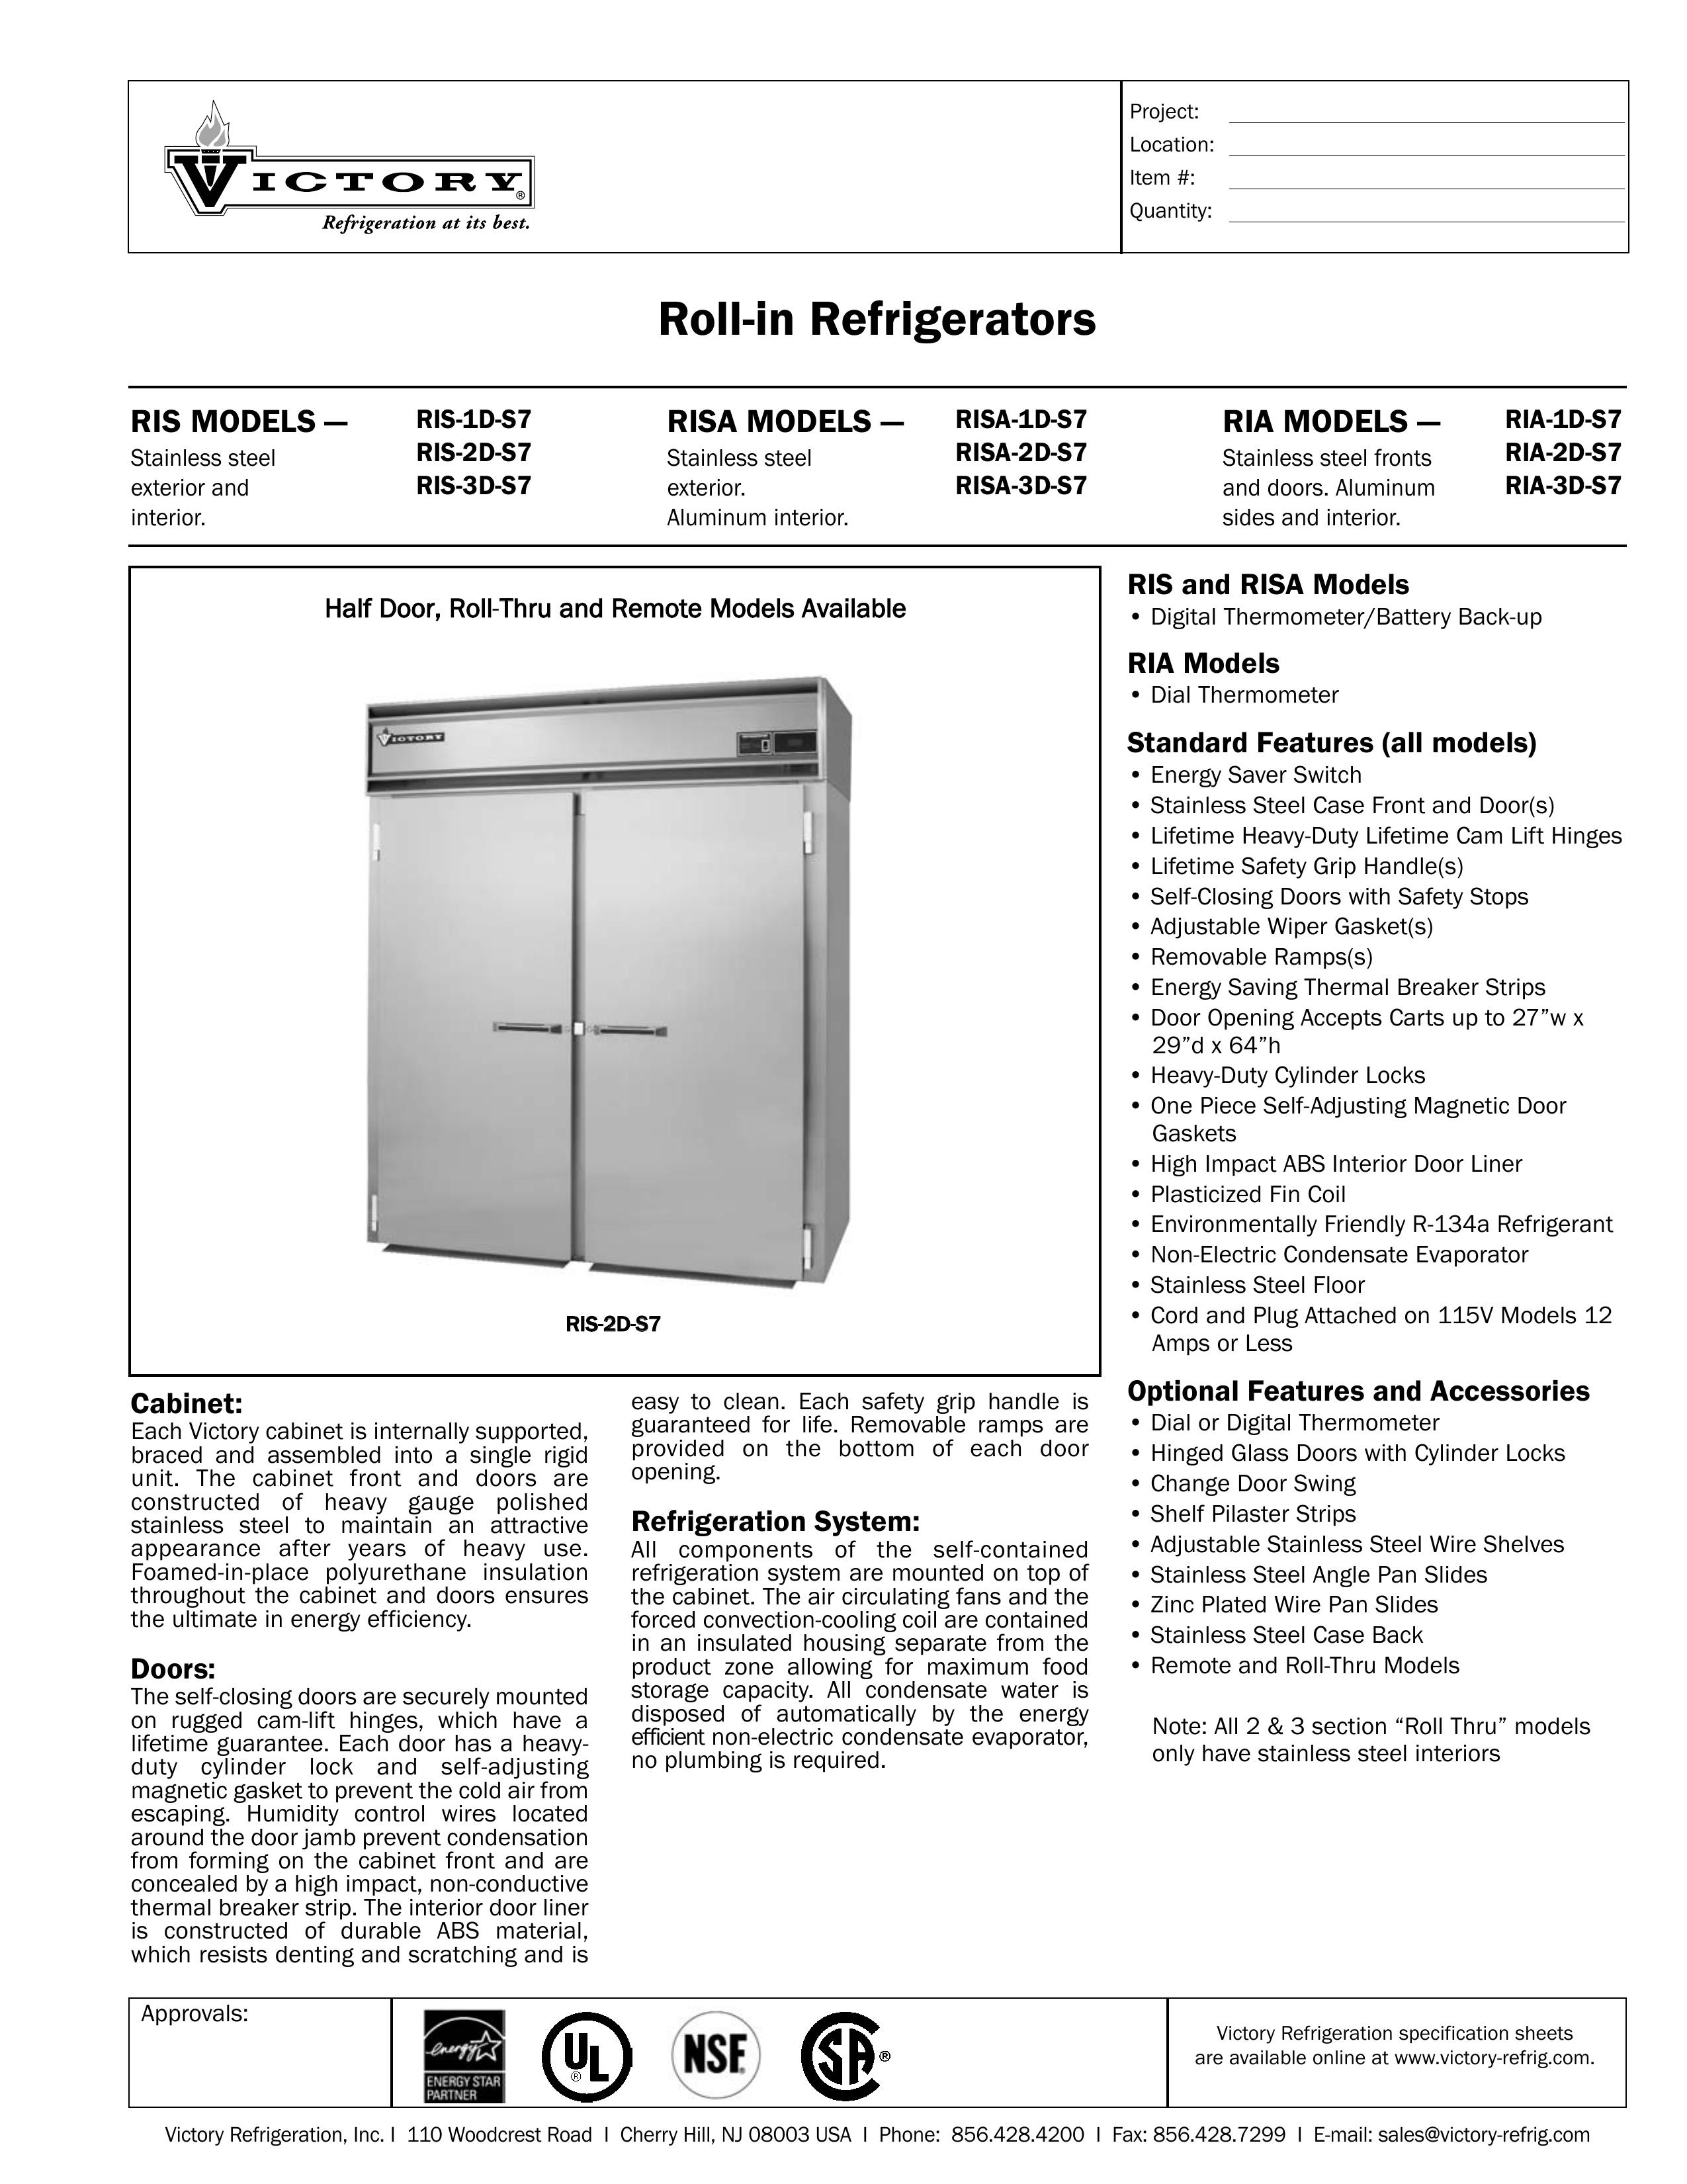 Victory Refrigeration RISA-1D-S7 Refrigerator User Manual